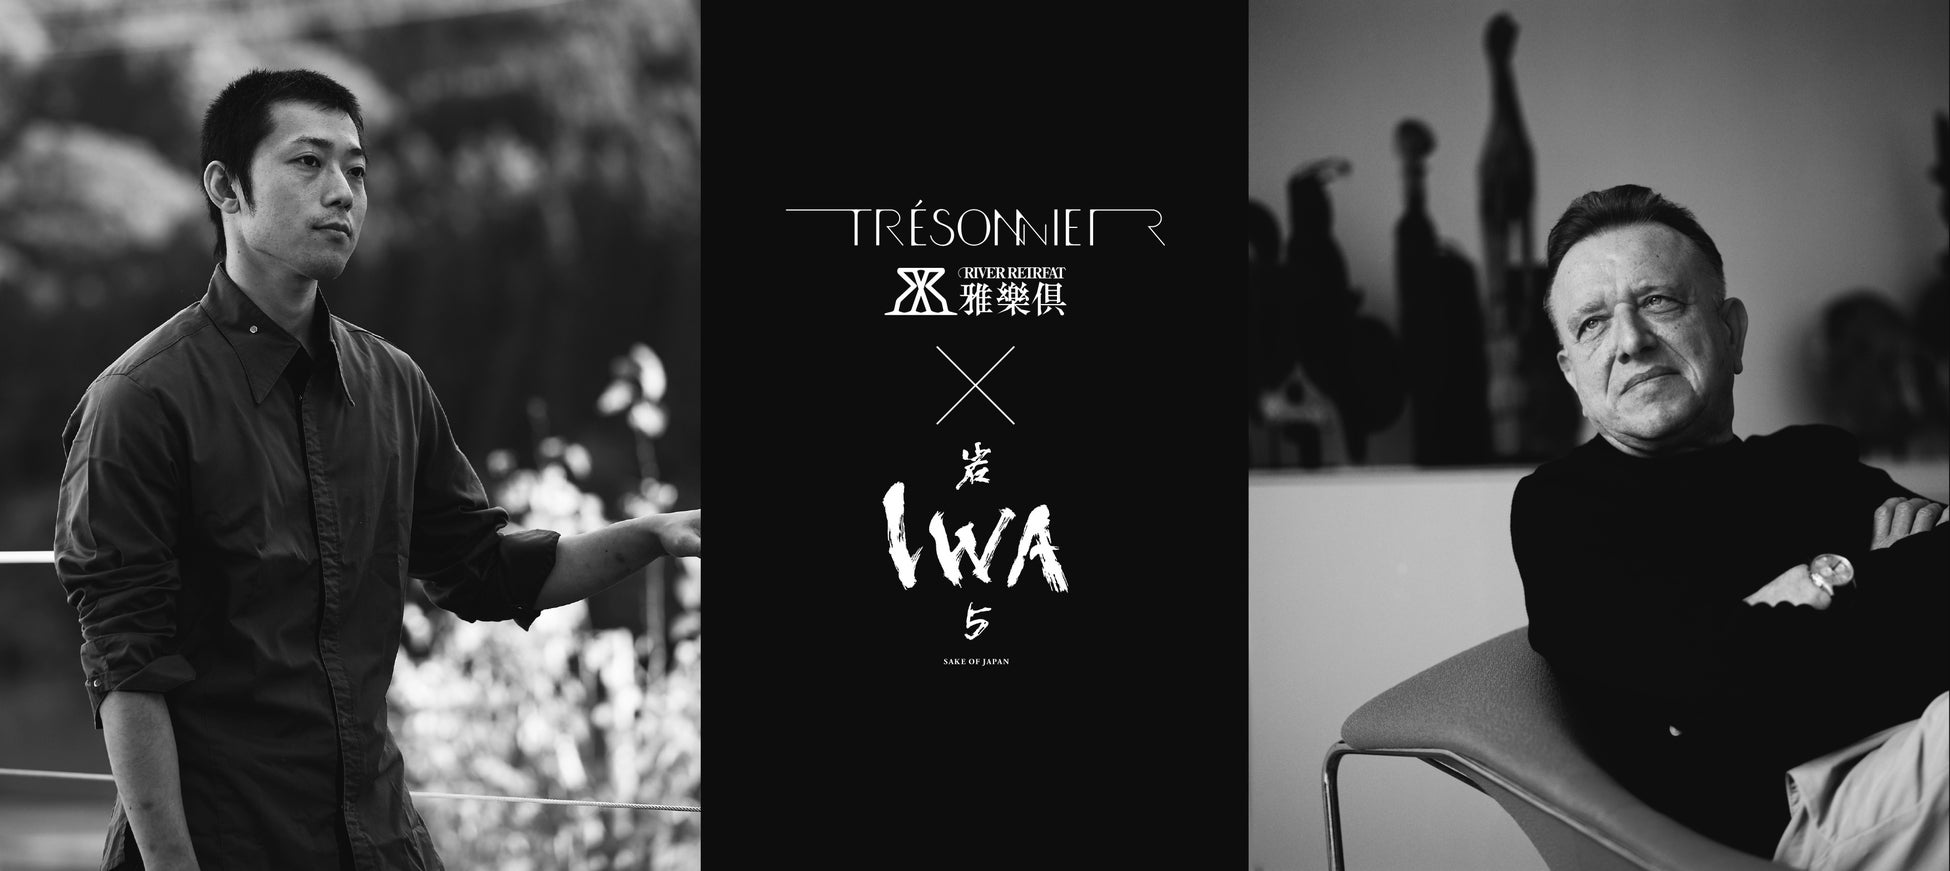 リバーリトリート雅樂倶内レストラン「Trésonnier」×「(株)白岩」IWA 5 スペシャルディナー開催のお知らせ。